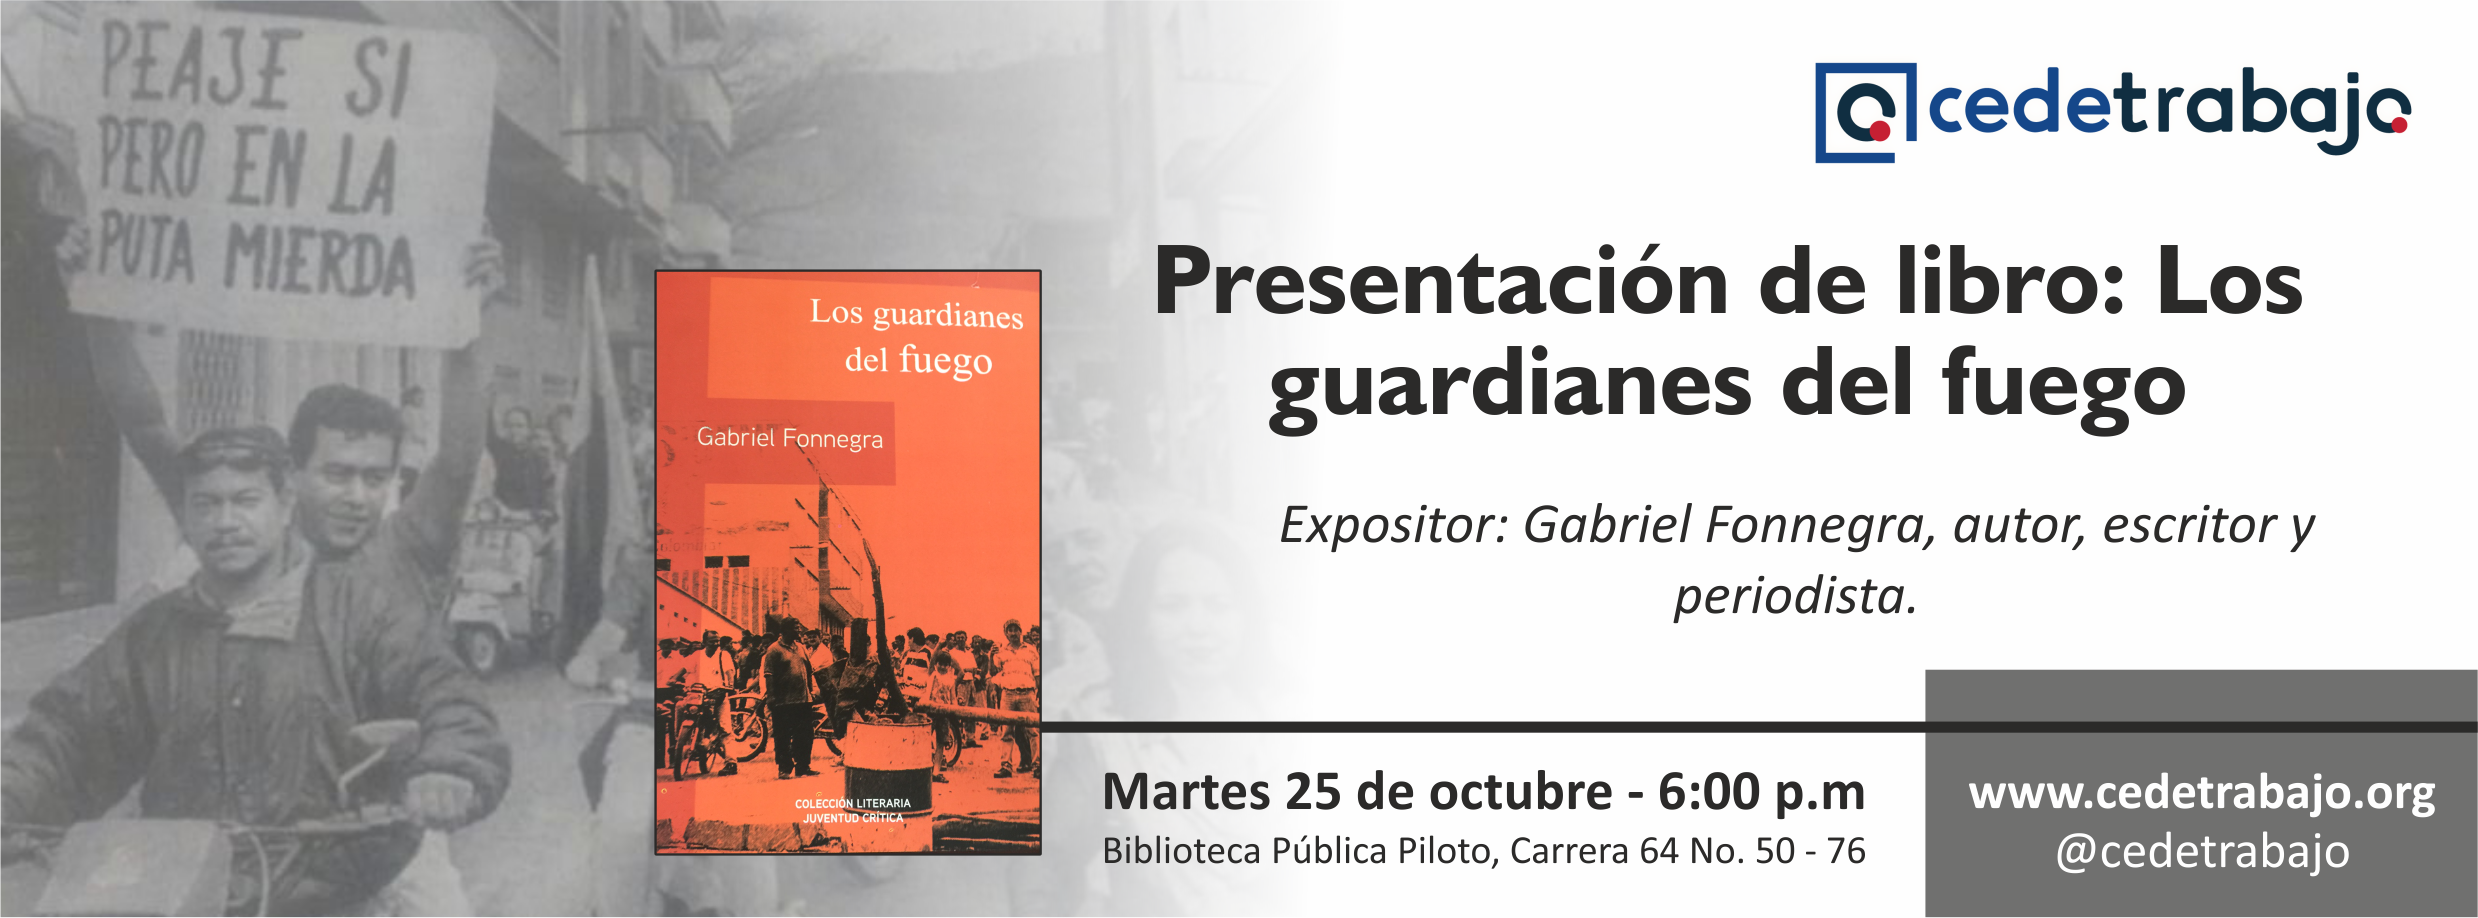 Cedetrabajo Antioquia invita a la presentación del libro: Los guardianes del fuego, del escritor Gabriel Fonnegra en la Biblioteca Pública Piloto